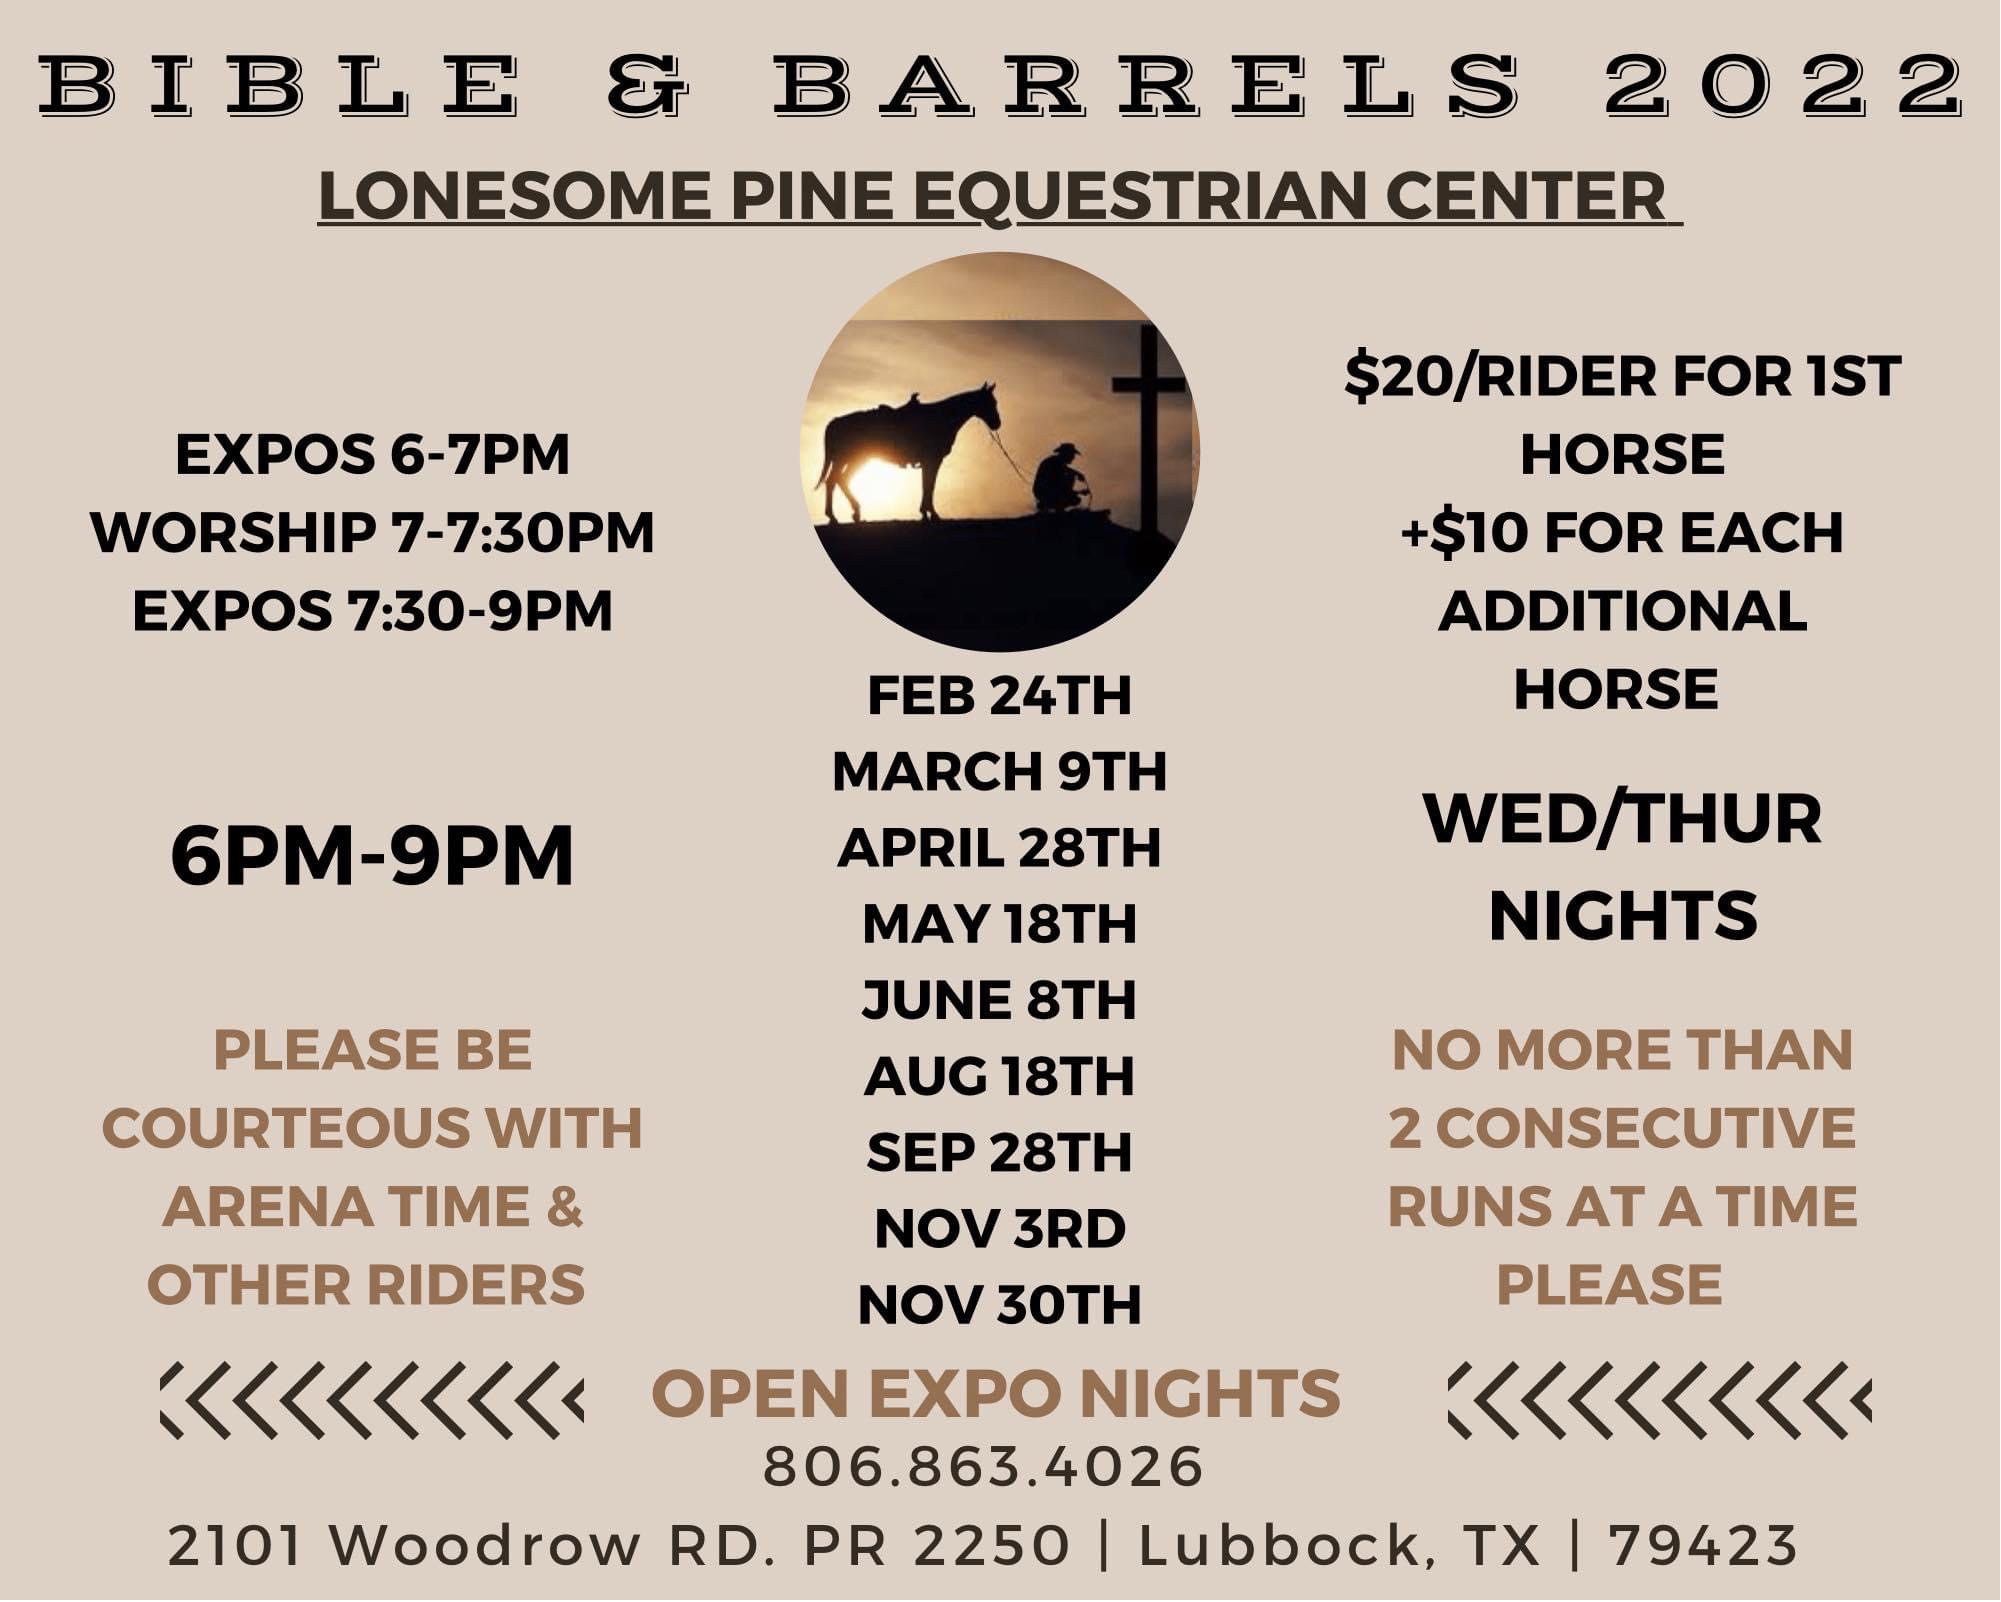 Bible & Barrels 2022